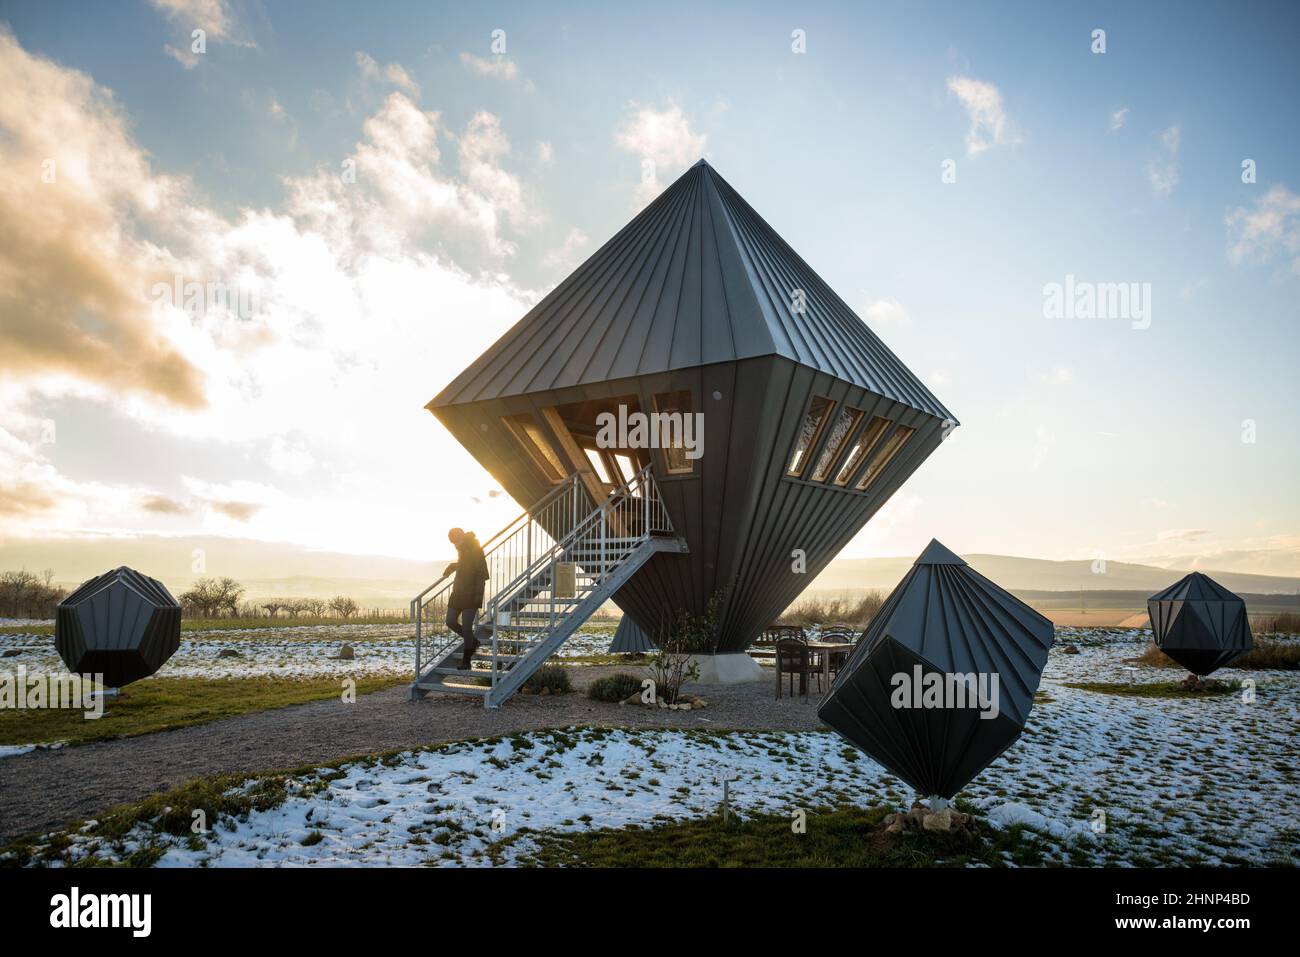 Aussichtsturm oktaeder am sigless Burgenland Österreich Stockfoto